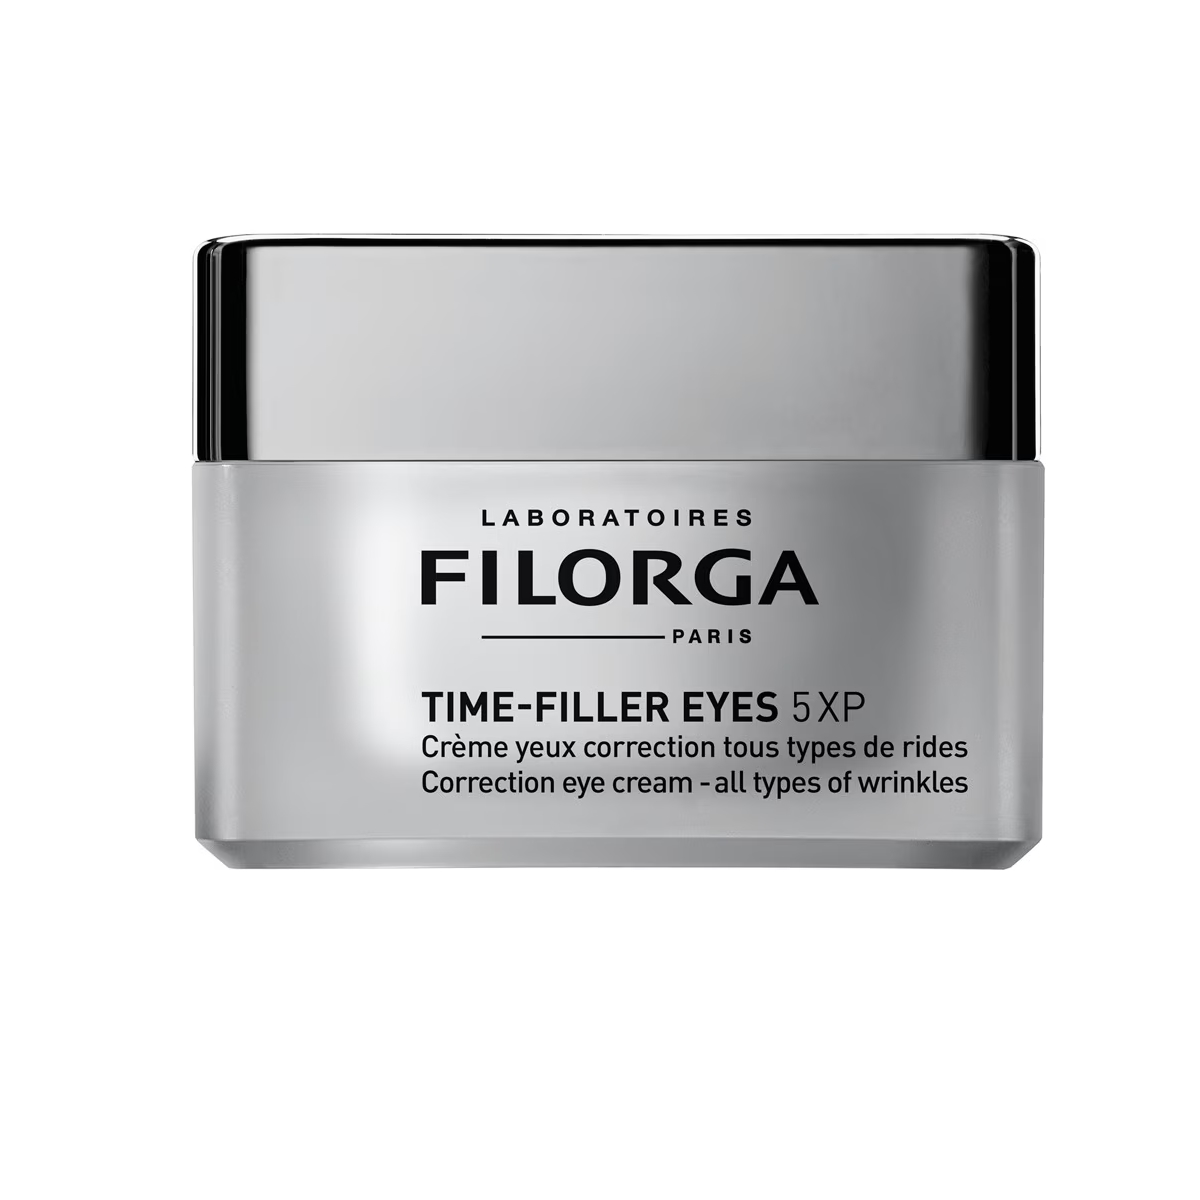 Contorno de ojos antiarrugas Time Filler Eyes 5XP de Filorga.